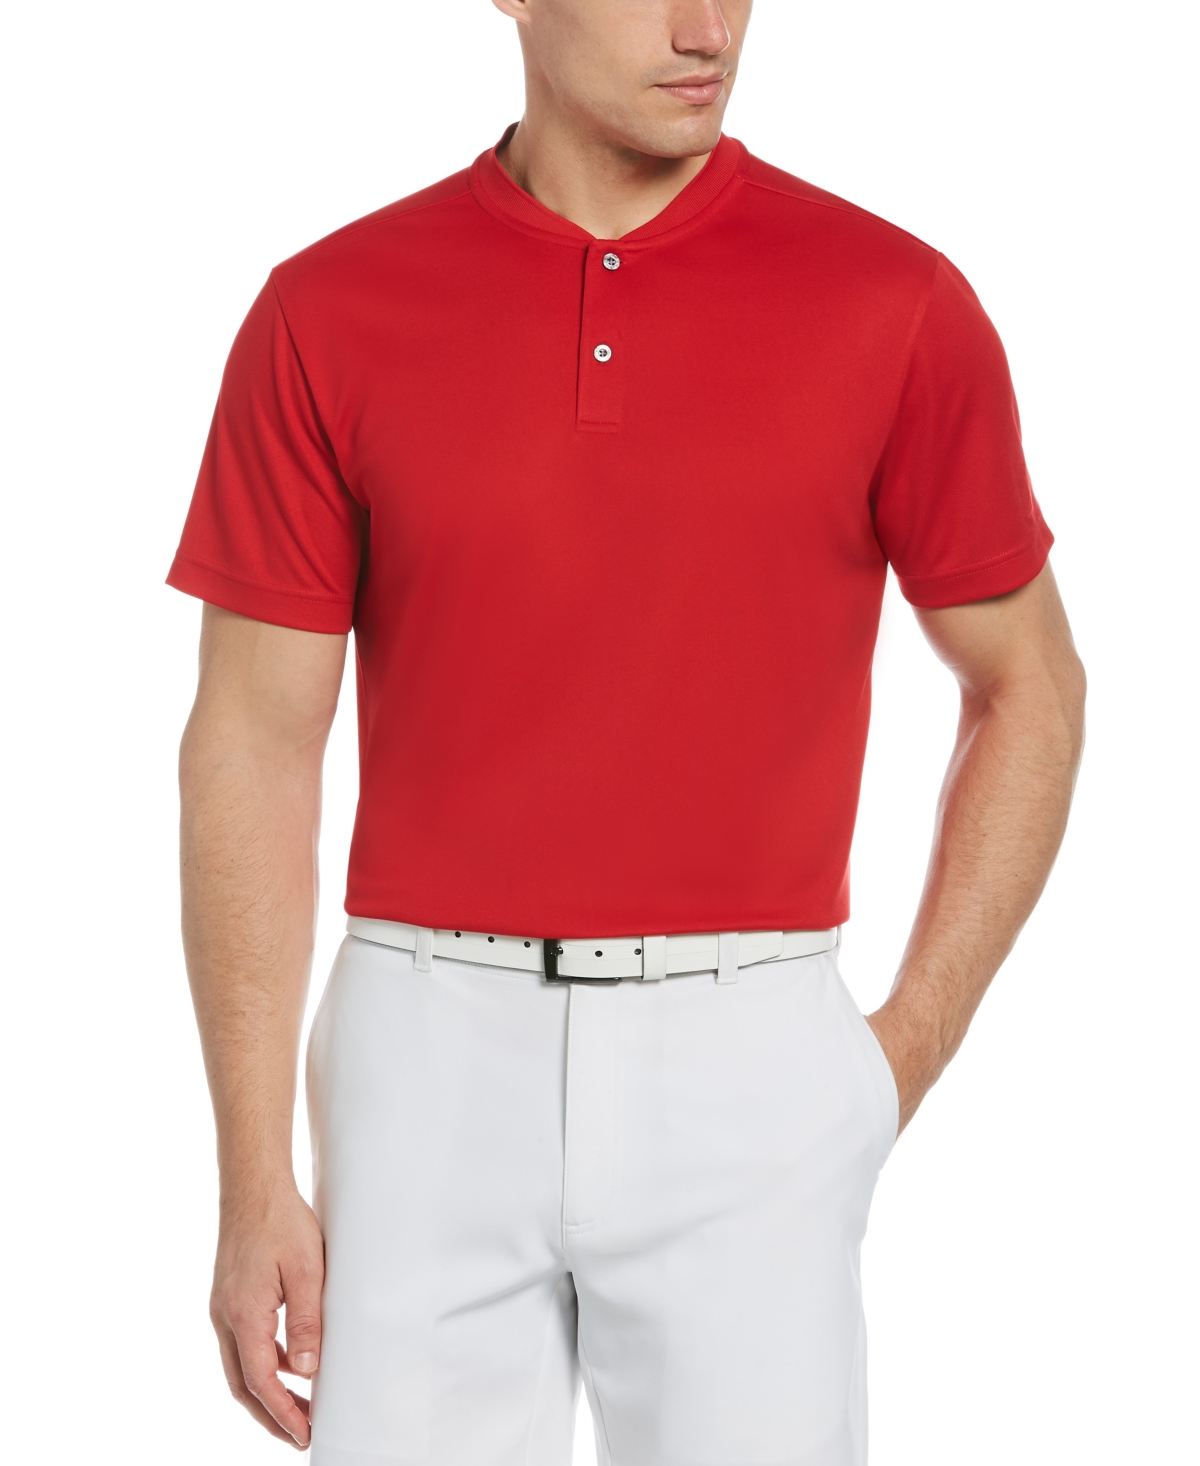 Men's Pique Golf Polo With New Casual Collar - Tango Red